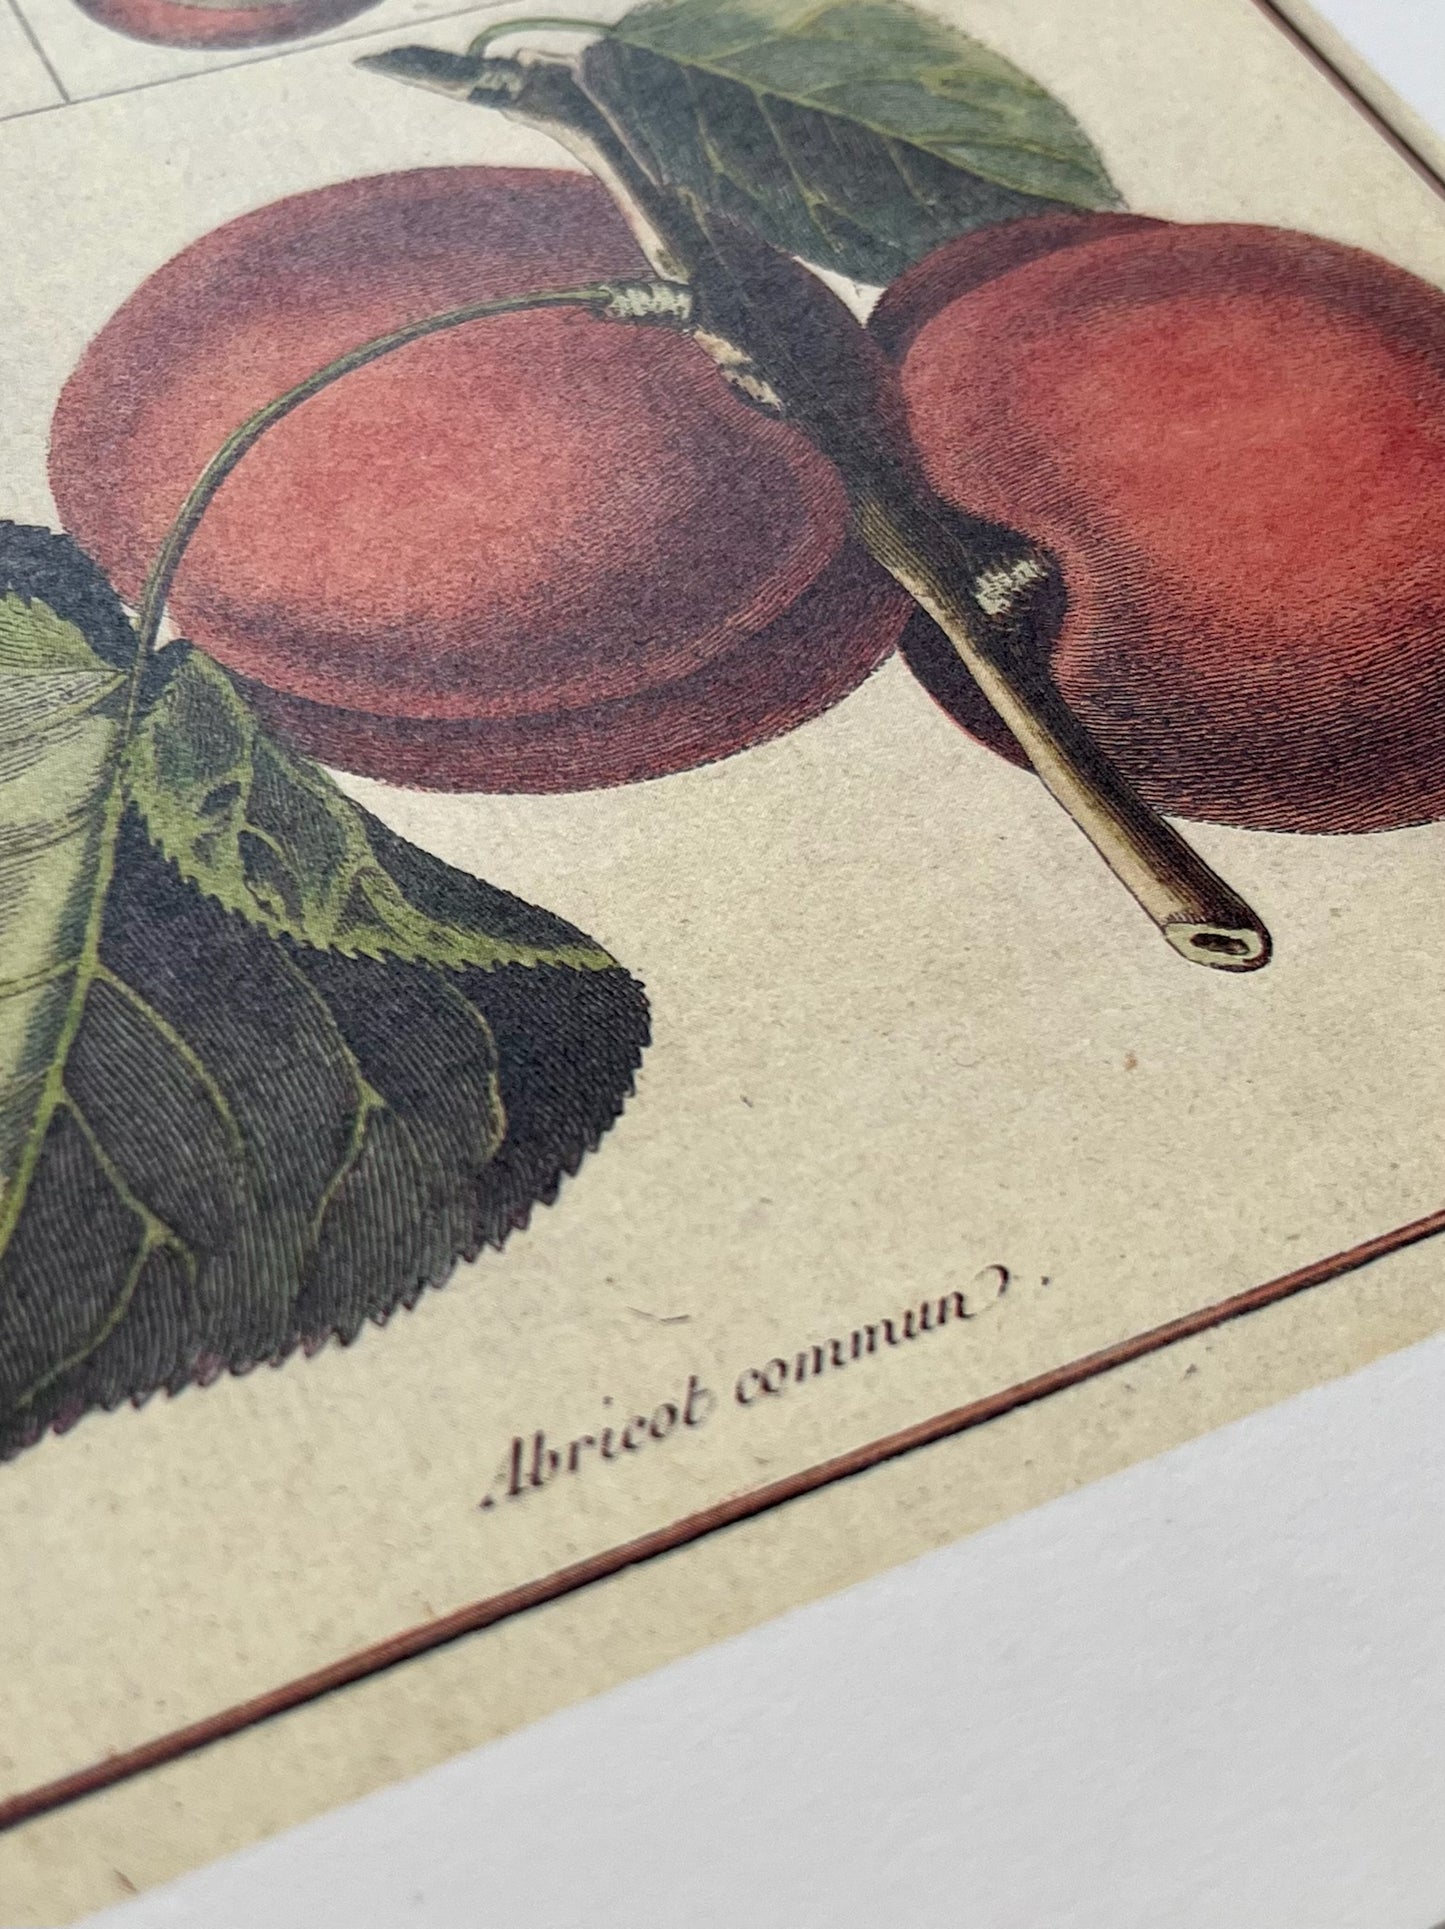 "Apricot Commun" Art Print